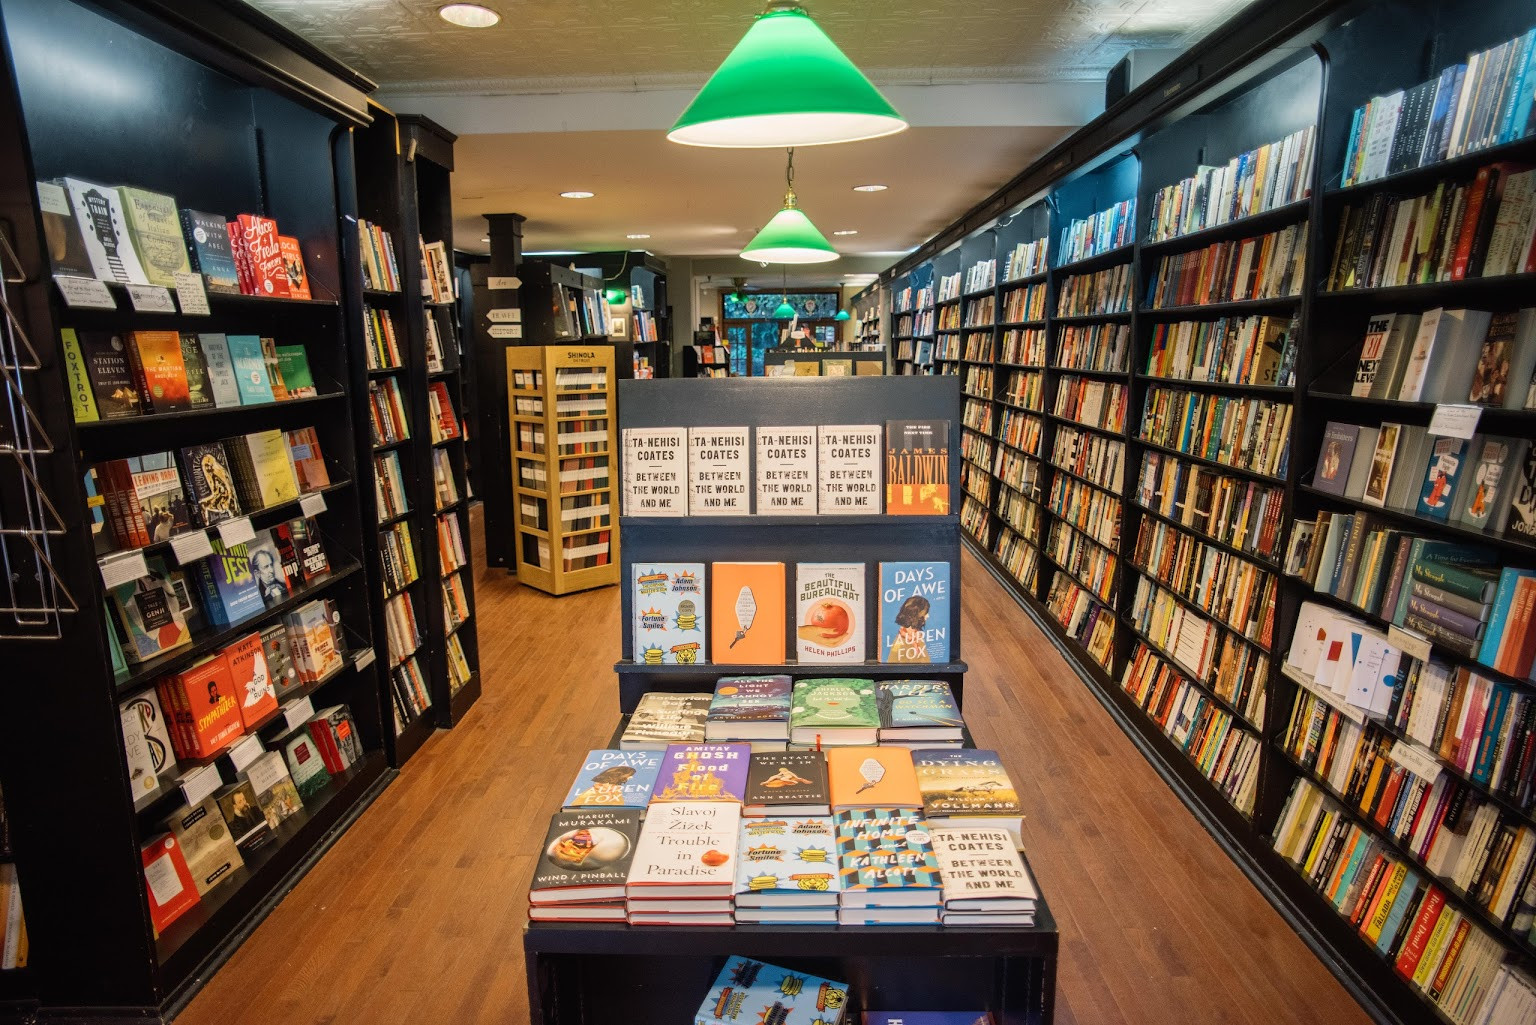 More books shop. Название книжного магазина. Libreria книжный London. Книжный магазин бук шоп. Bookshop картинка.